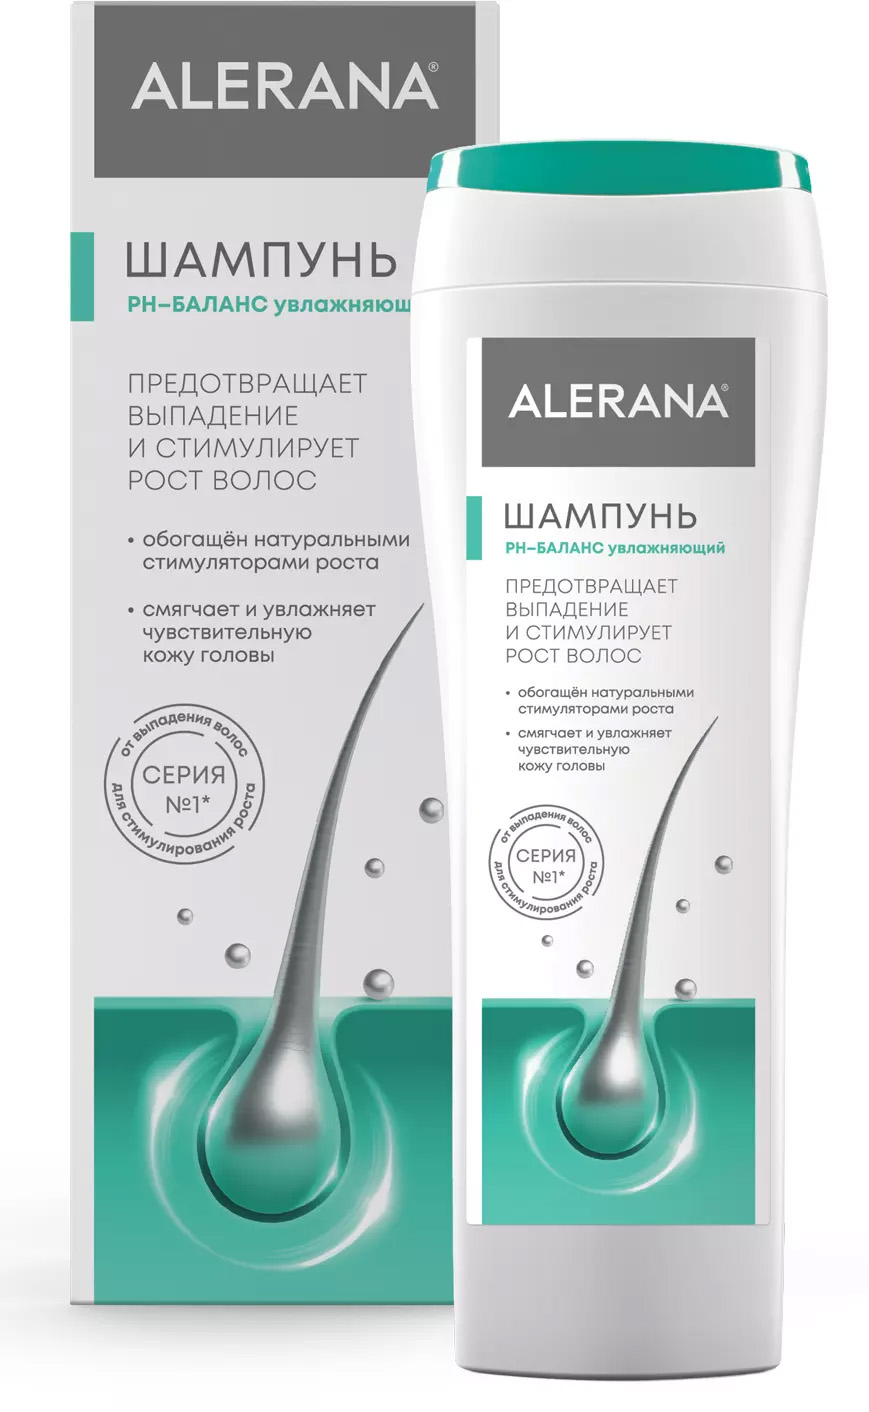 Alerana Шампунь pH-баланс увлажняющий, 250 мл (Alerana, Укрепление волос)